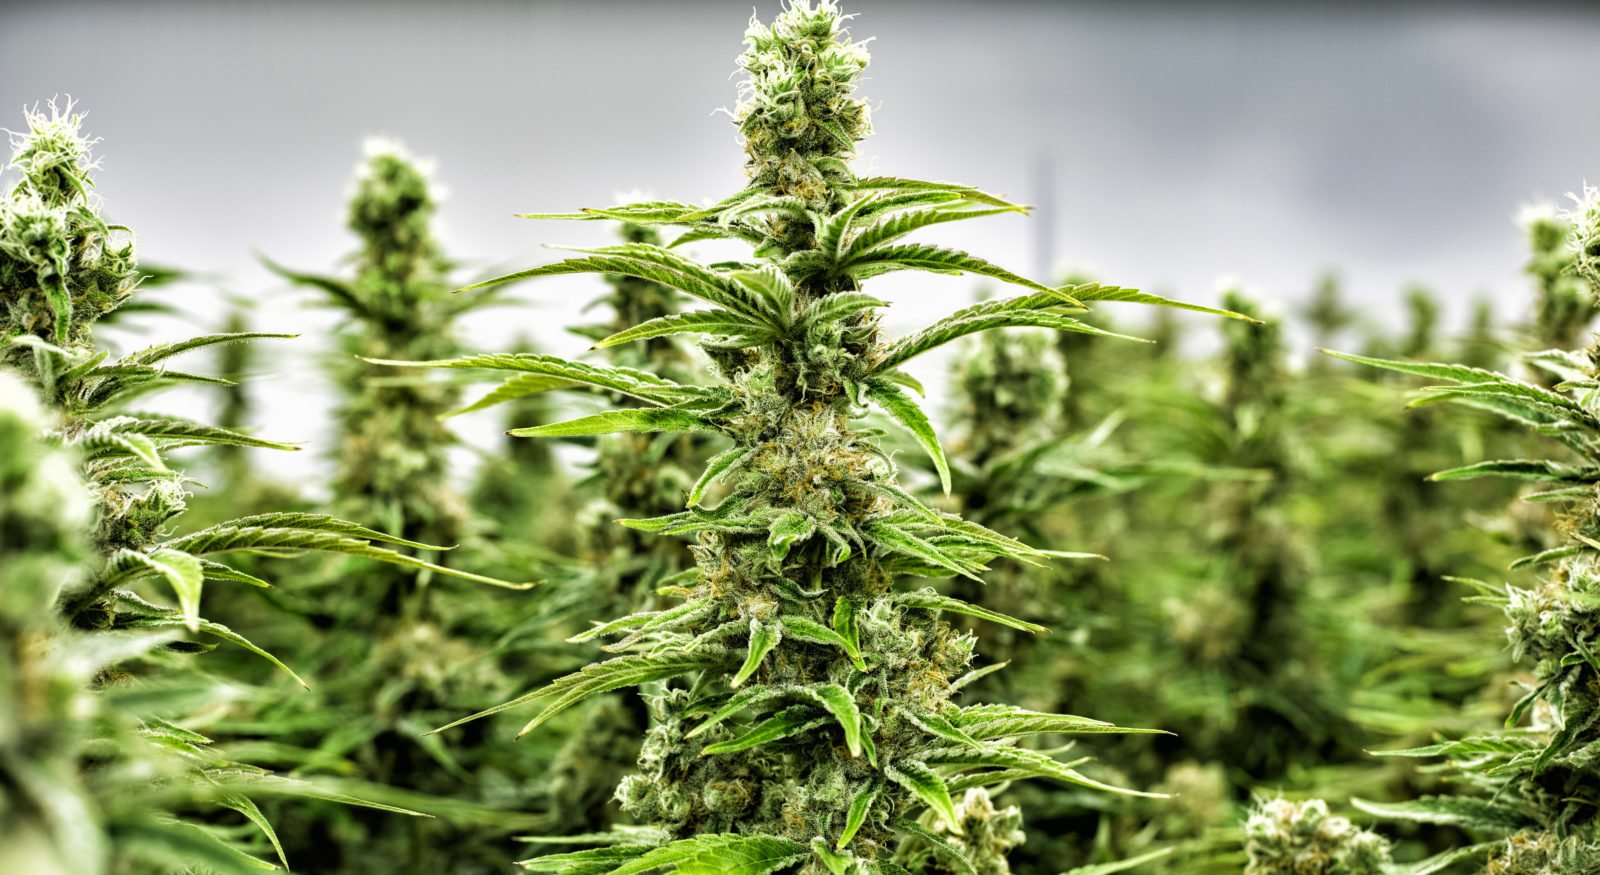 La UPV posee licencia para el cultivo de cannabis